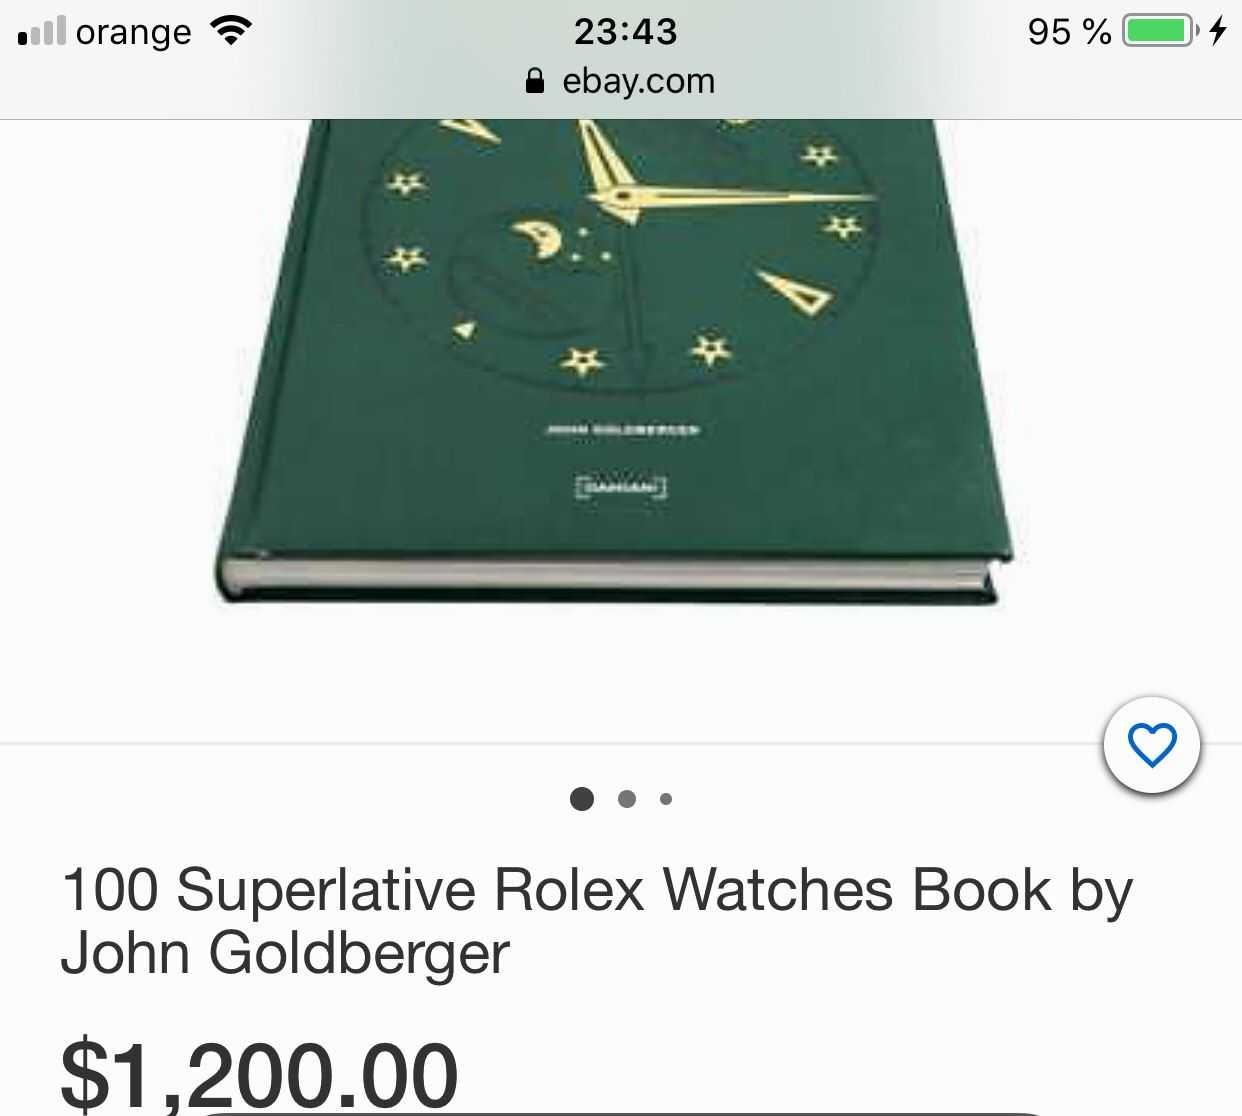 CATALOG - CARTE - 100 Superlative Rolex Watches - from John Goldberger